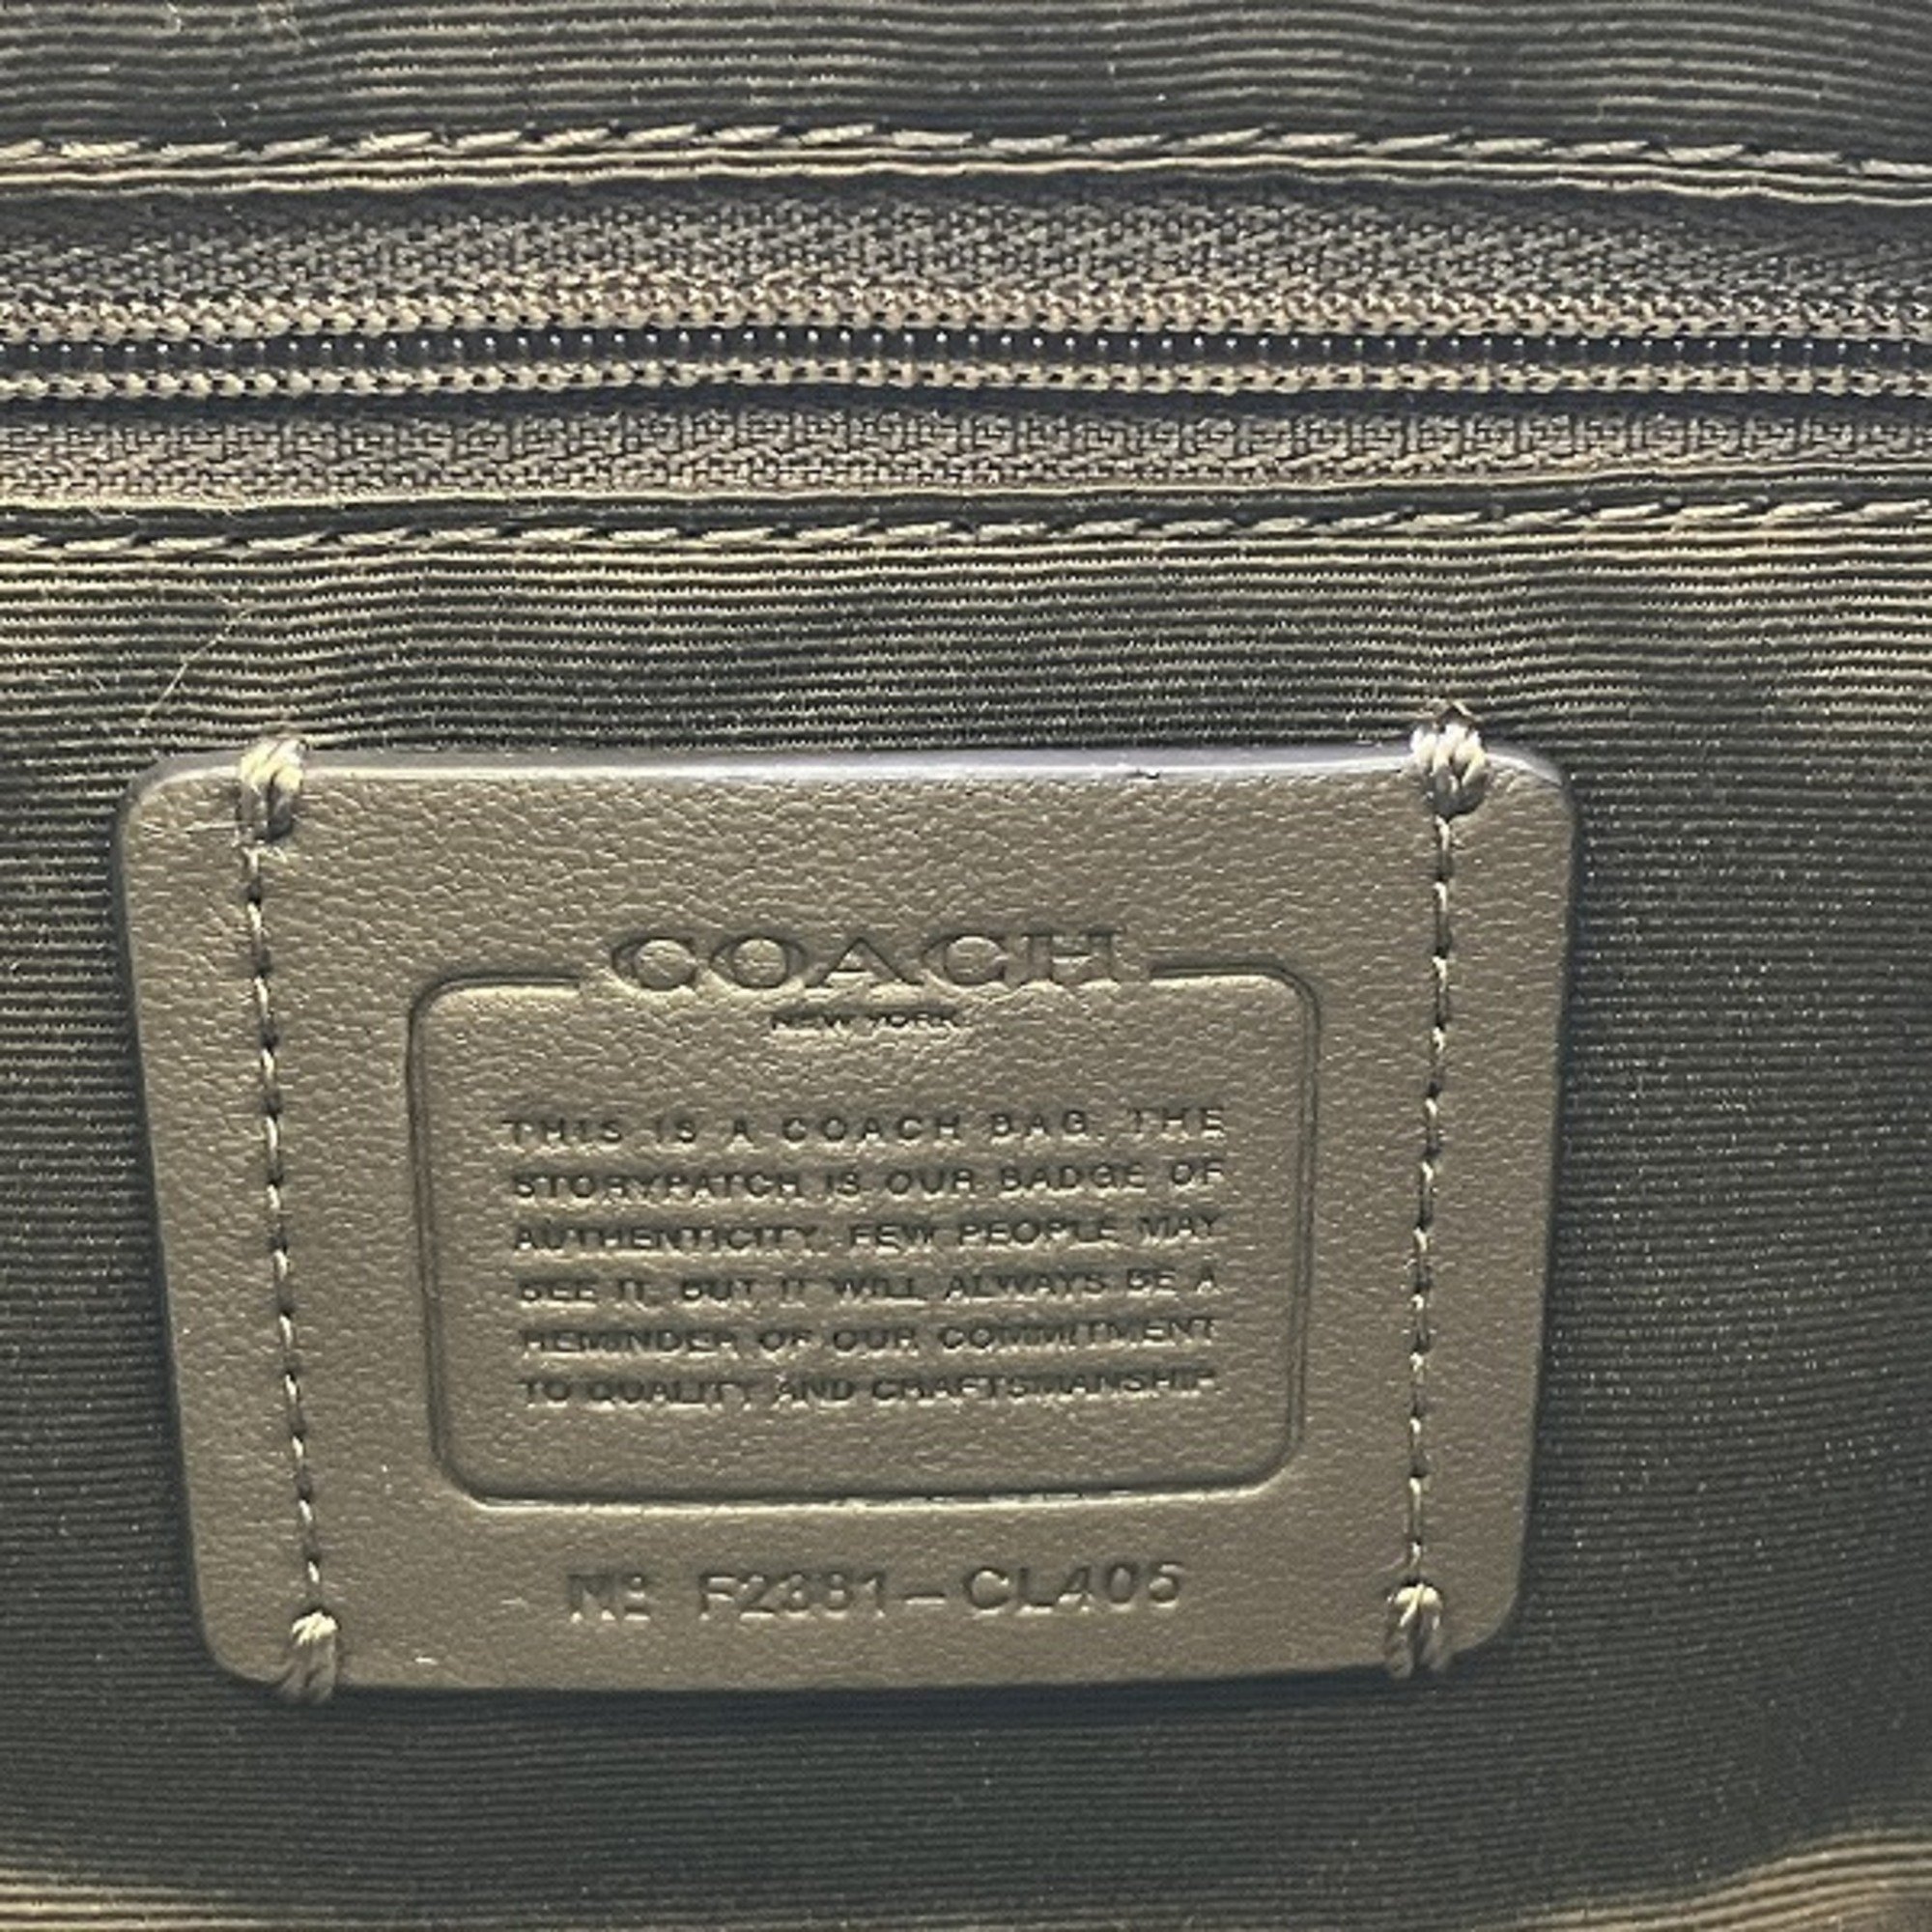 Coach COACH Signature Charlotte CL405 Bag Shoulder Women's Product